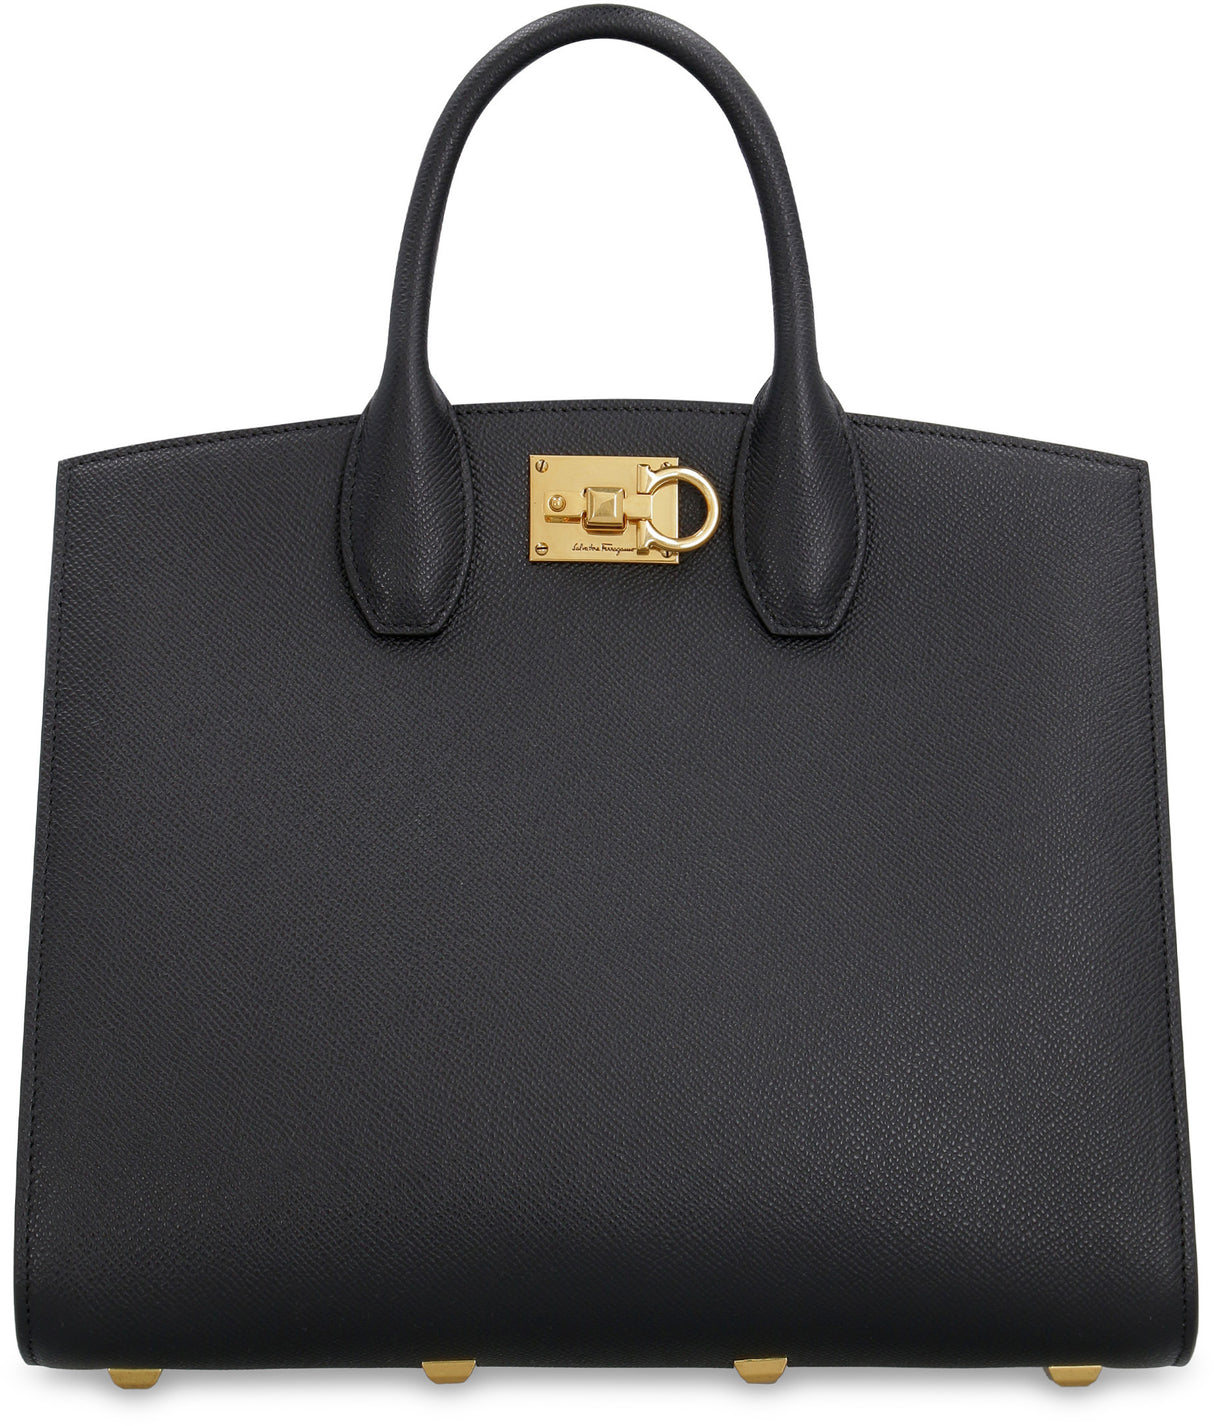 贅沢な黒革の女性用ハンドバッグ - ハイエンドのスタジオスタイル